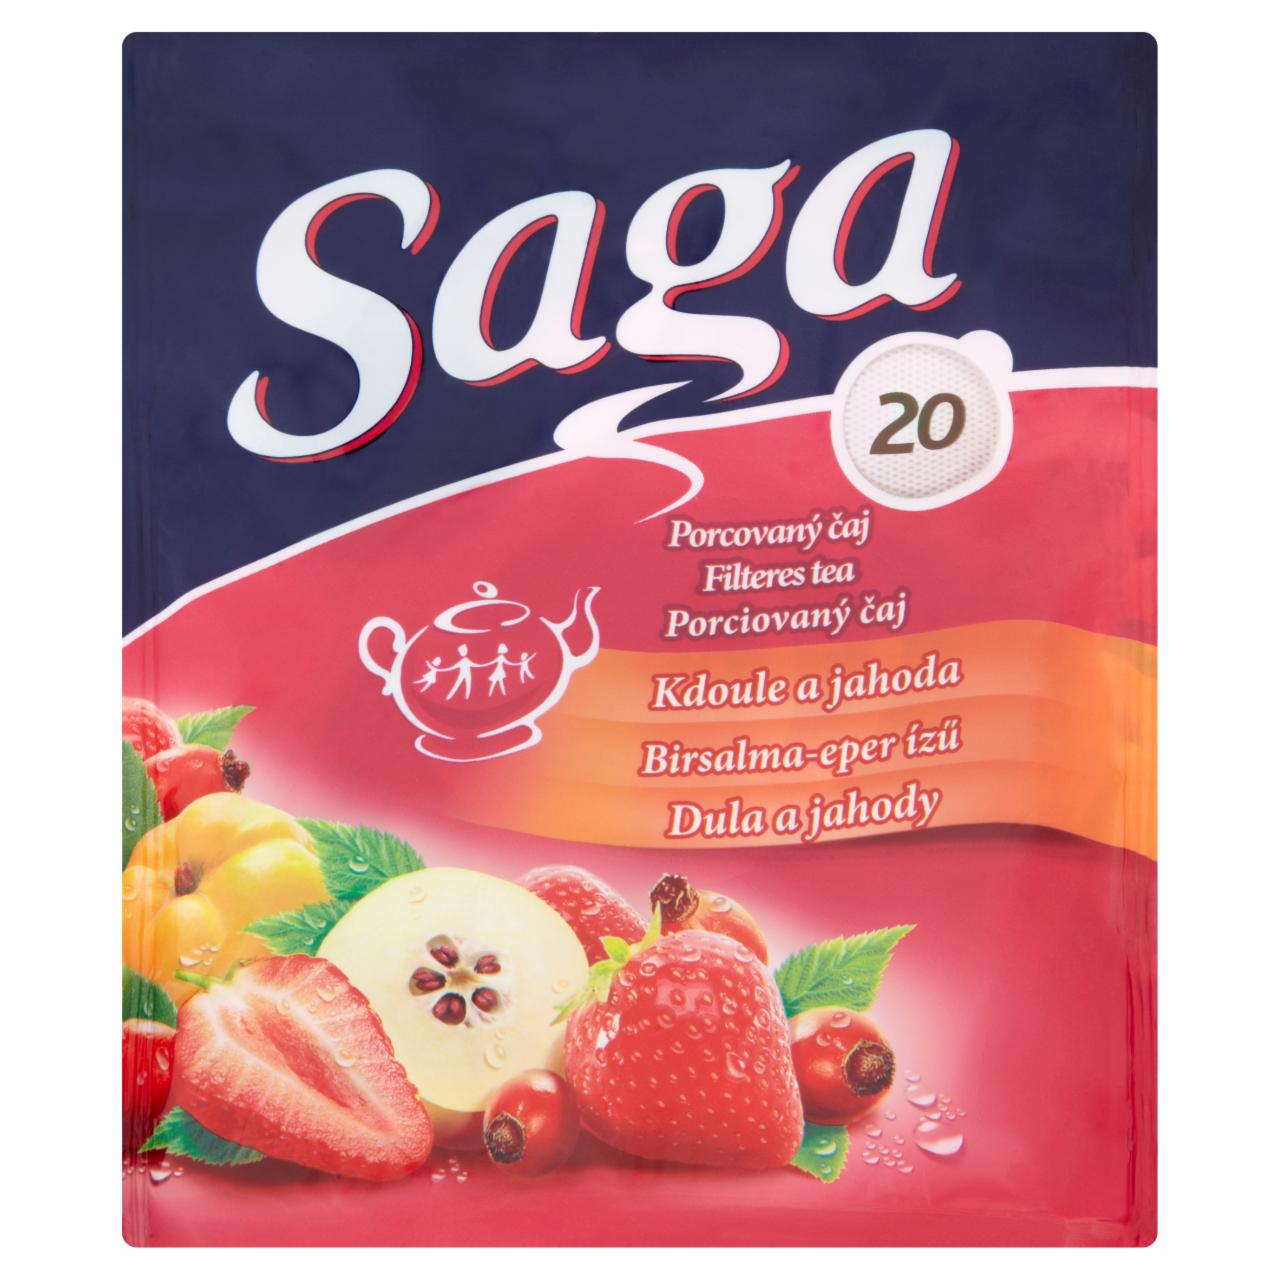 Képek - Saga birsalma-eper ízű gyümölcstea 20 filter 40 g